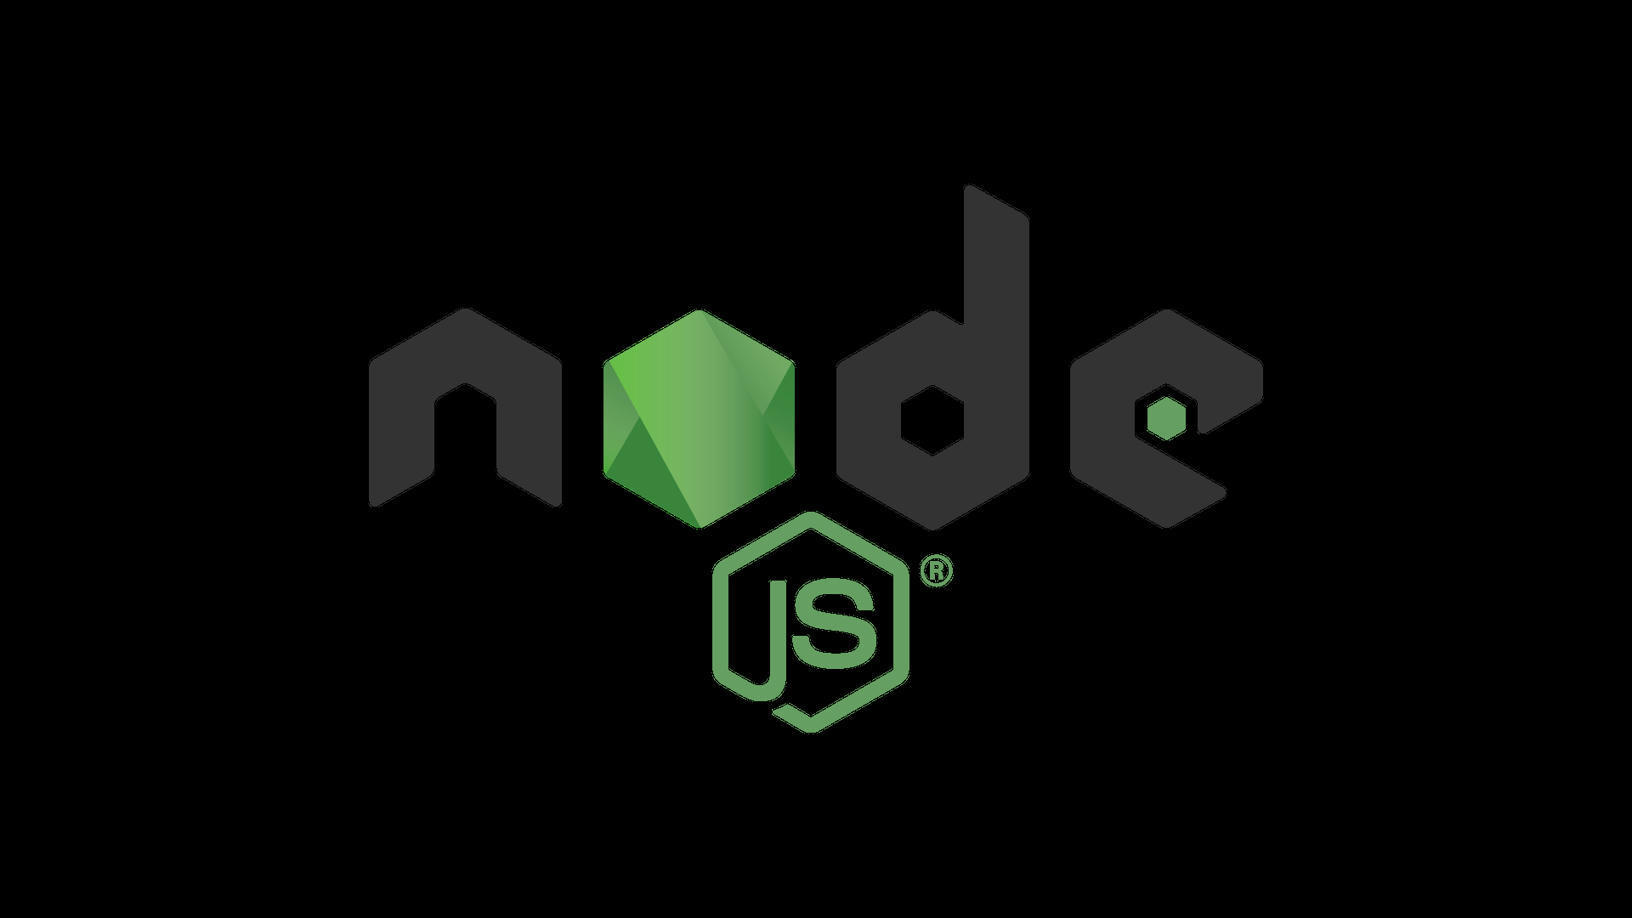 Https nodejs org. Программирование node js. Обои node js. Последняя версия node js. Скрипт на node js.